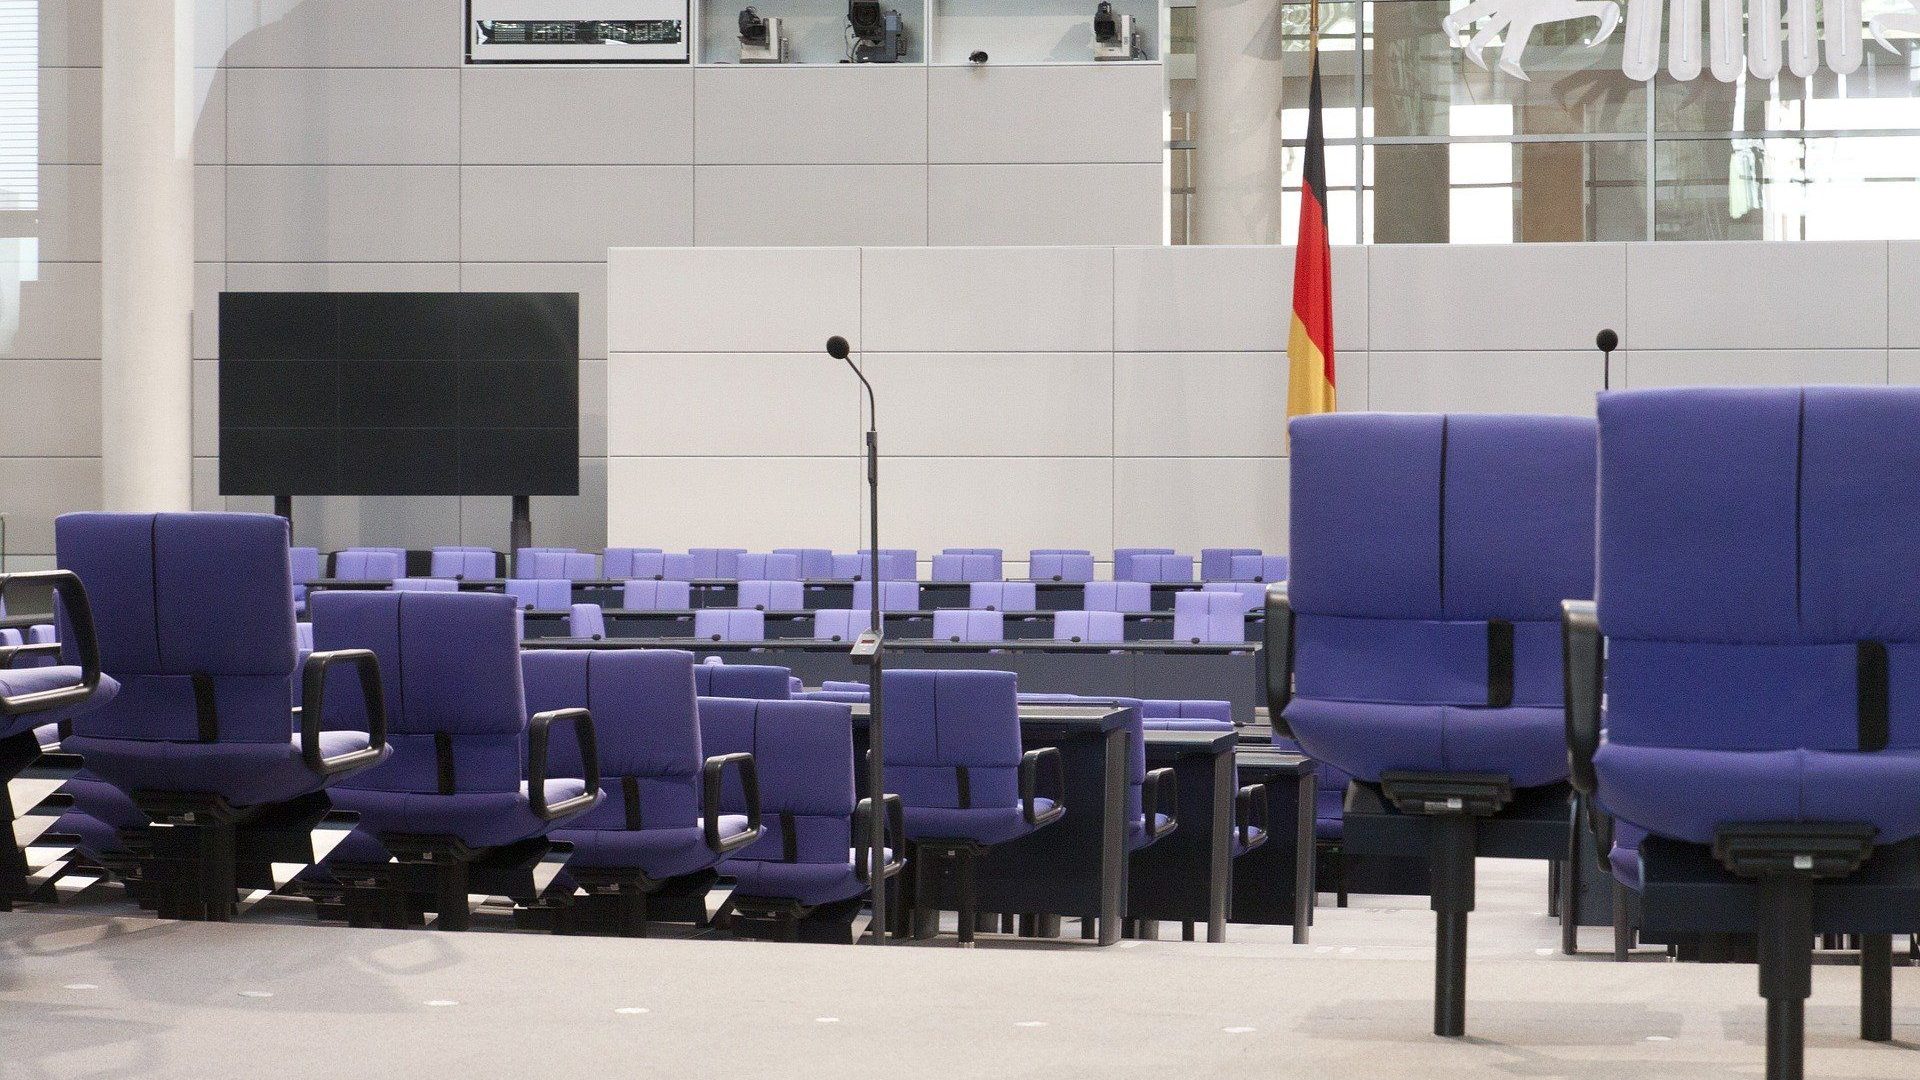 Lobbyregister für den deutschen Bundestag